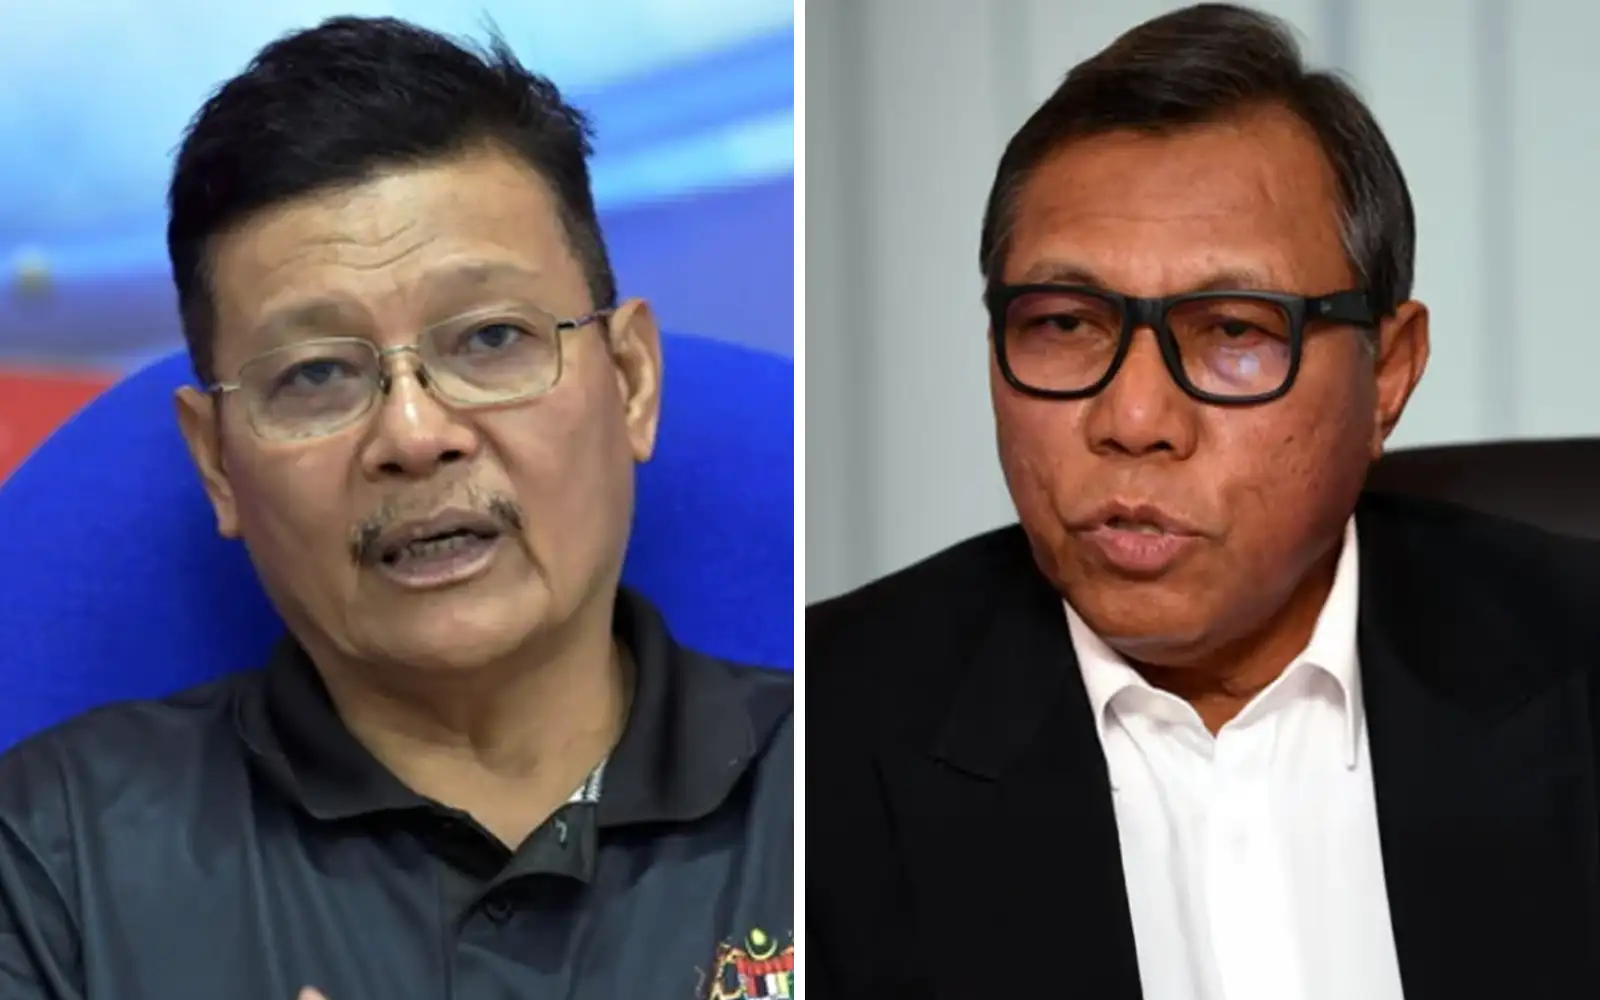 duo no longer bersatu members after joining ph campaign, says hamzah